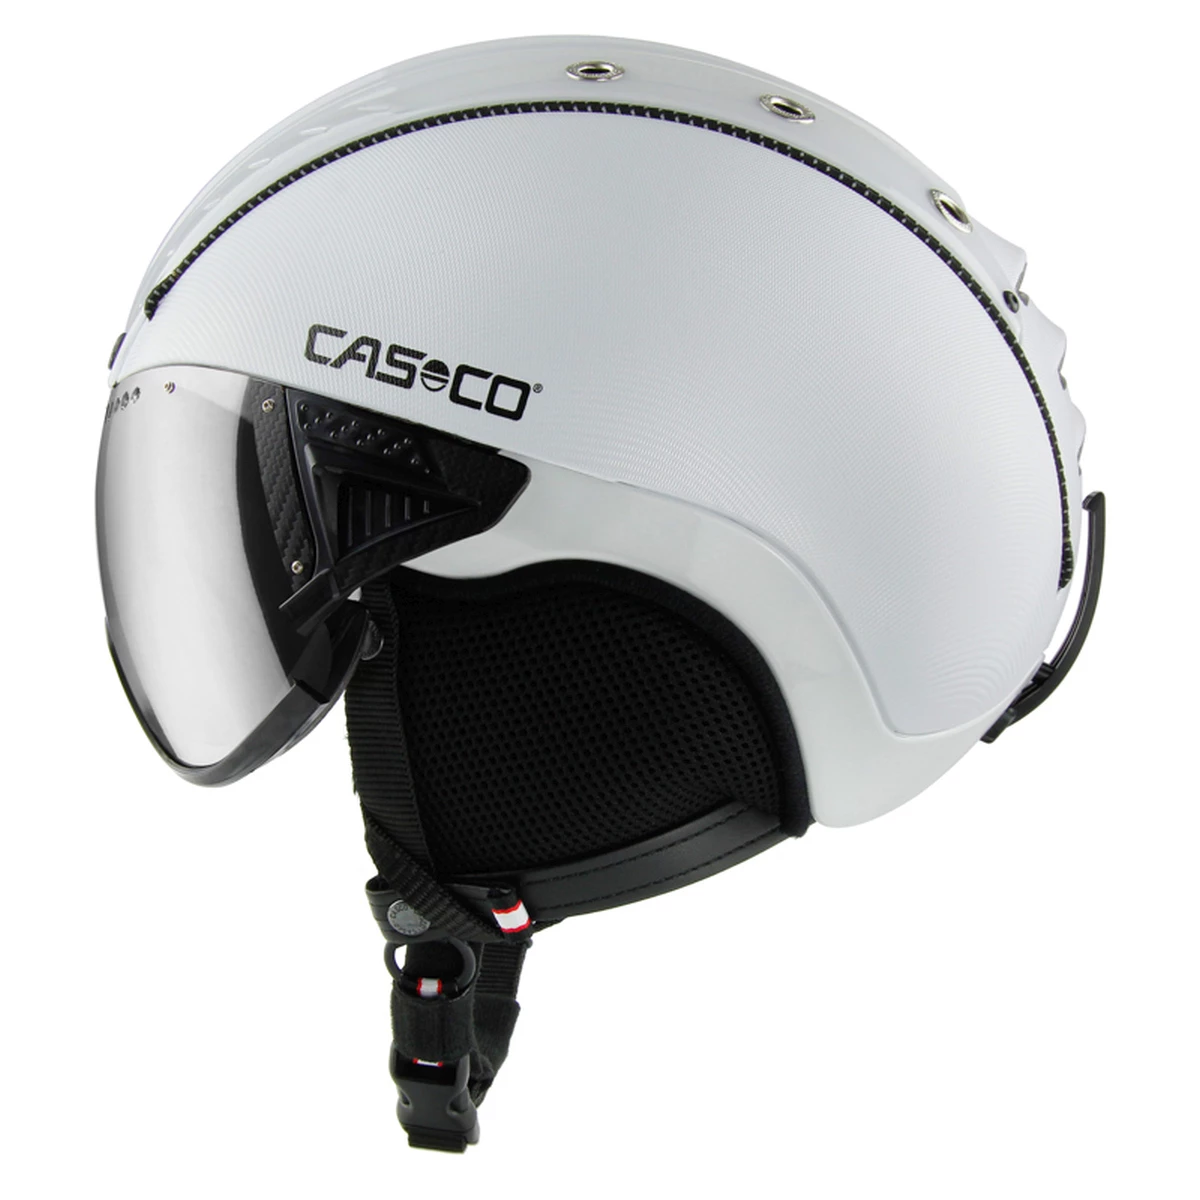 Casco SP-2 Carbonic Visor Helm - Helmen - Accessoires - Wintersport - Intersport van den Broek / Biggelaar